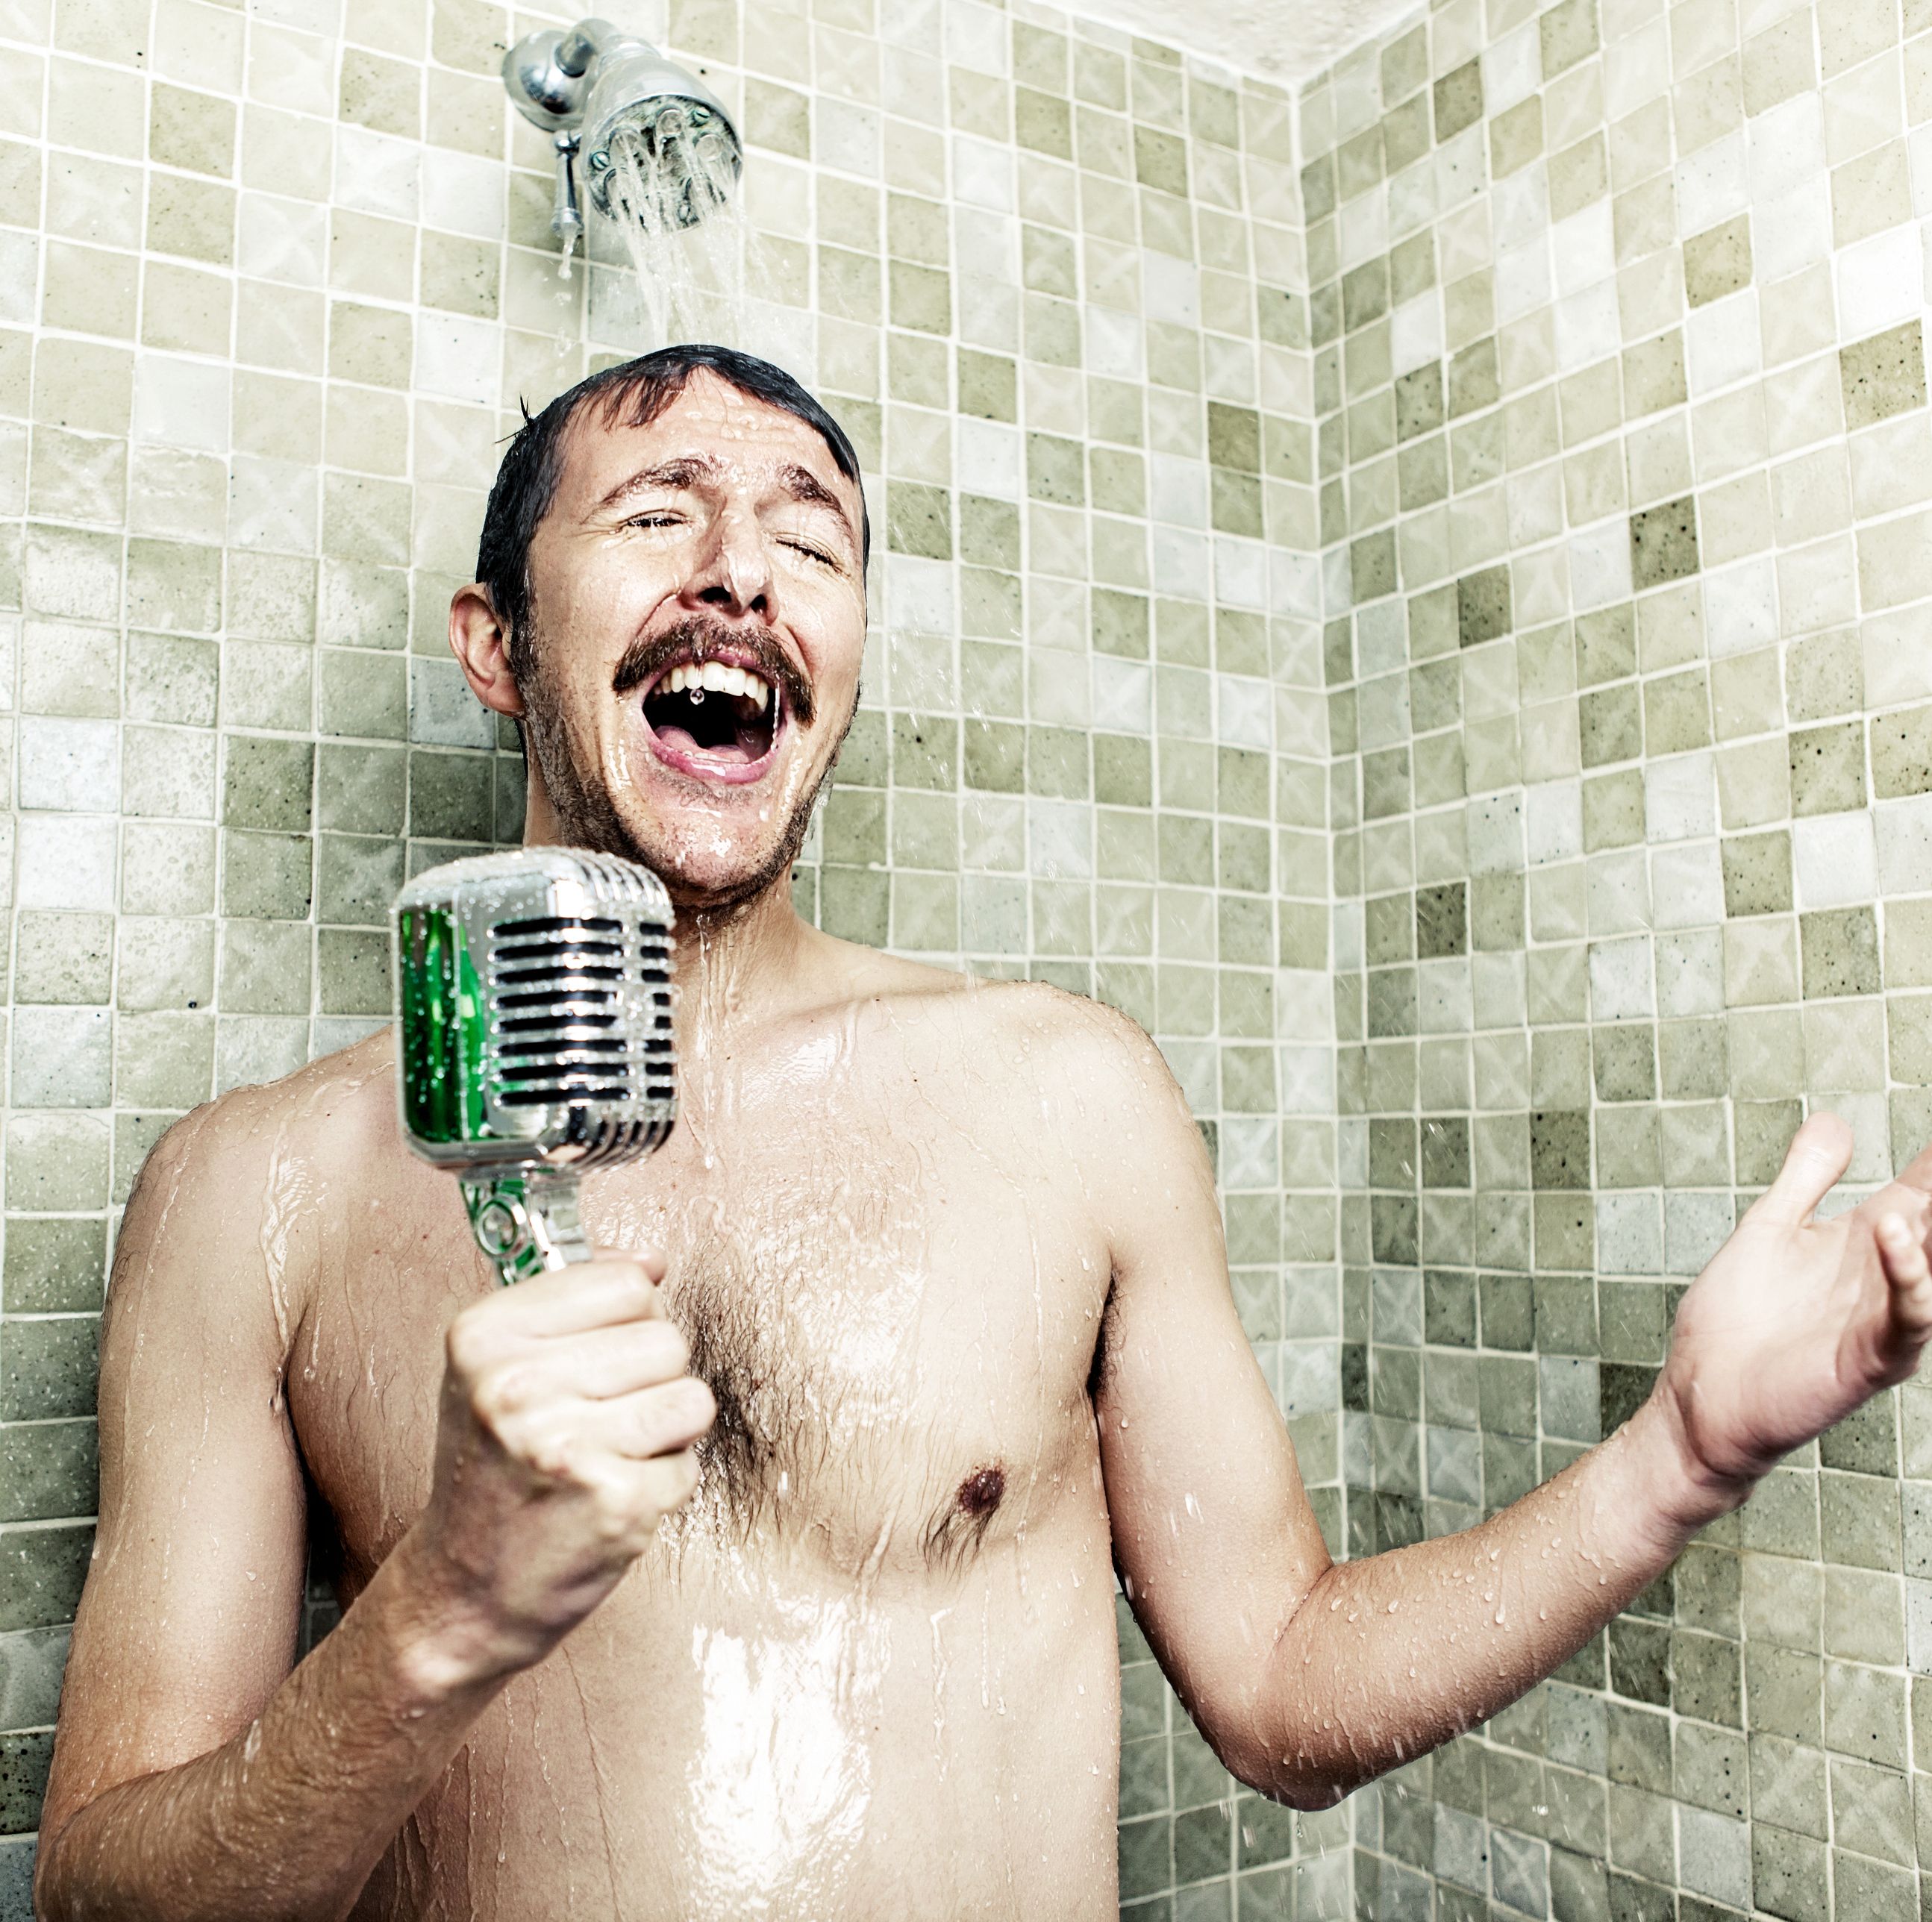 ¿La alcachofa de tu ducha puede hacerte enfermar?